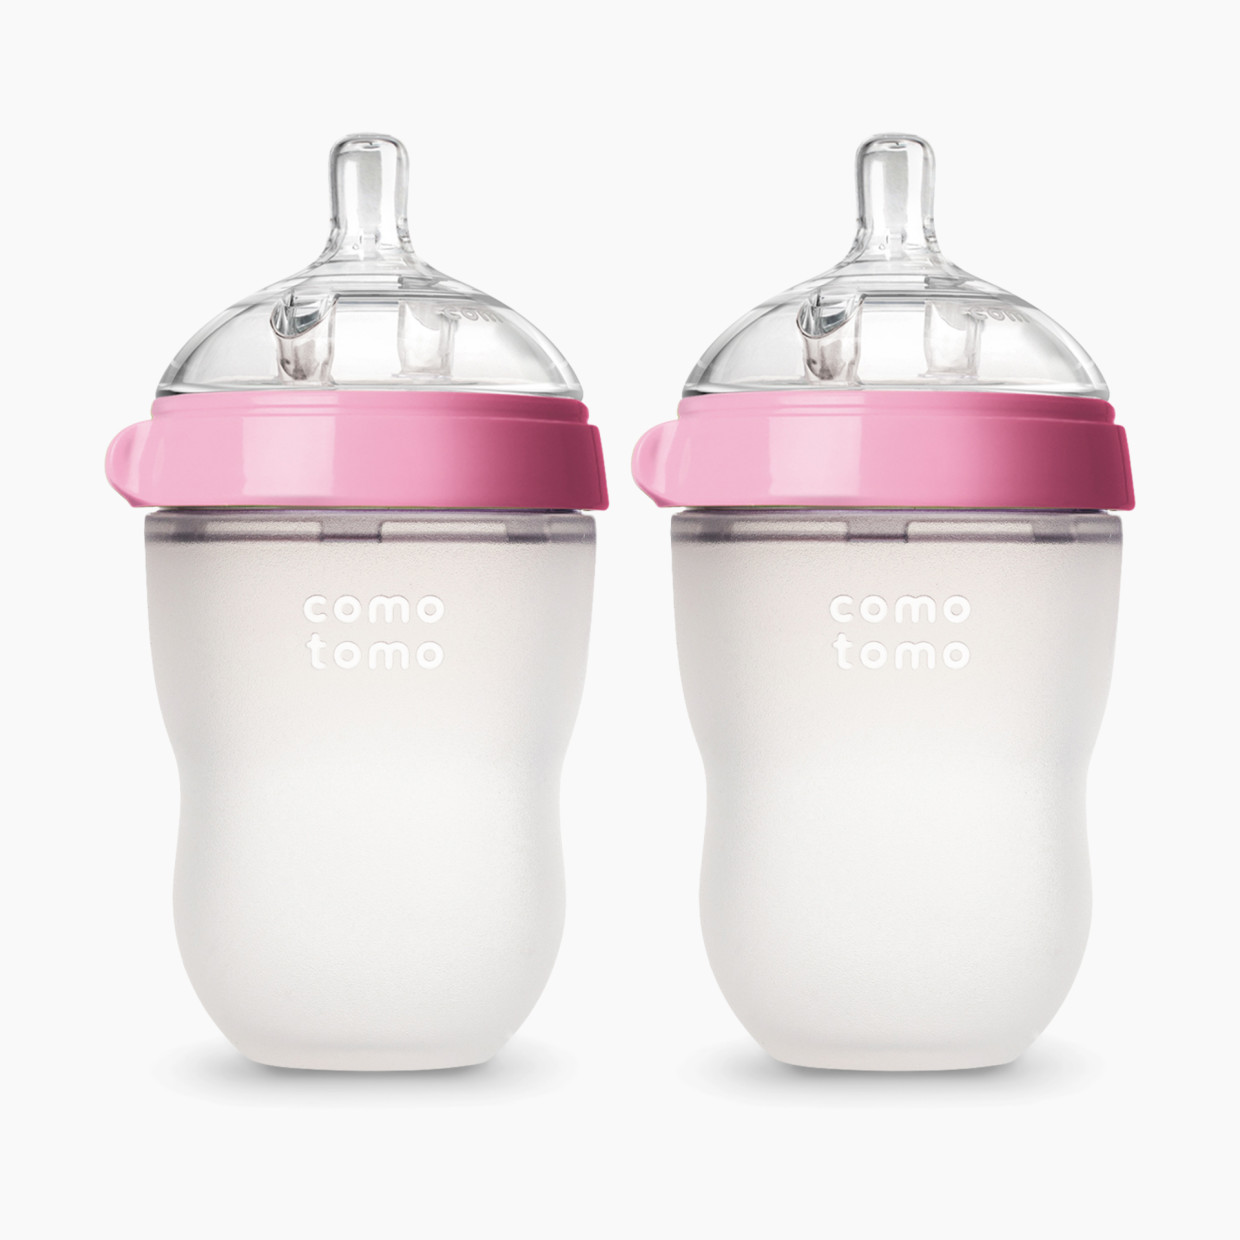 Comotomo Natural Feel Silicone Baby Bottles - Pink, 8 Oz, 2.